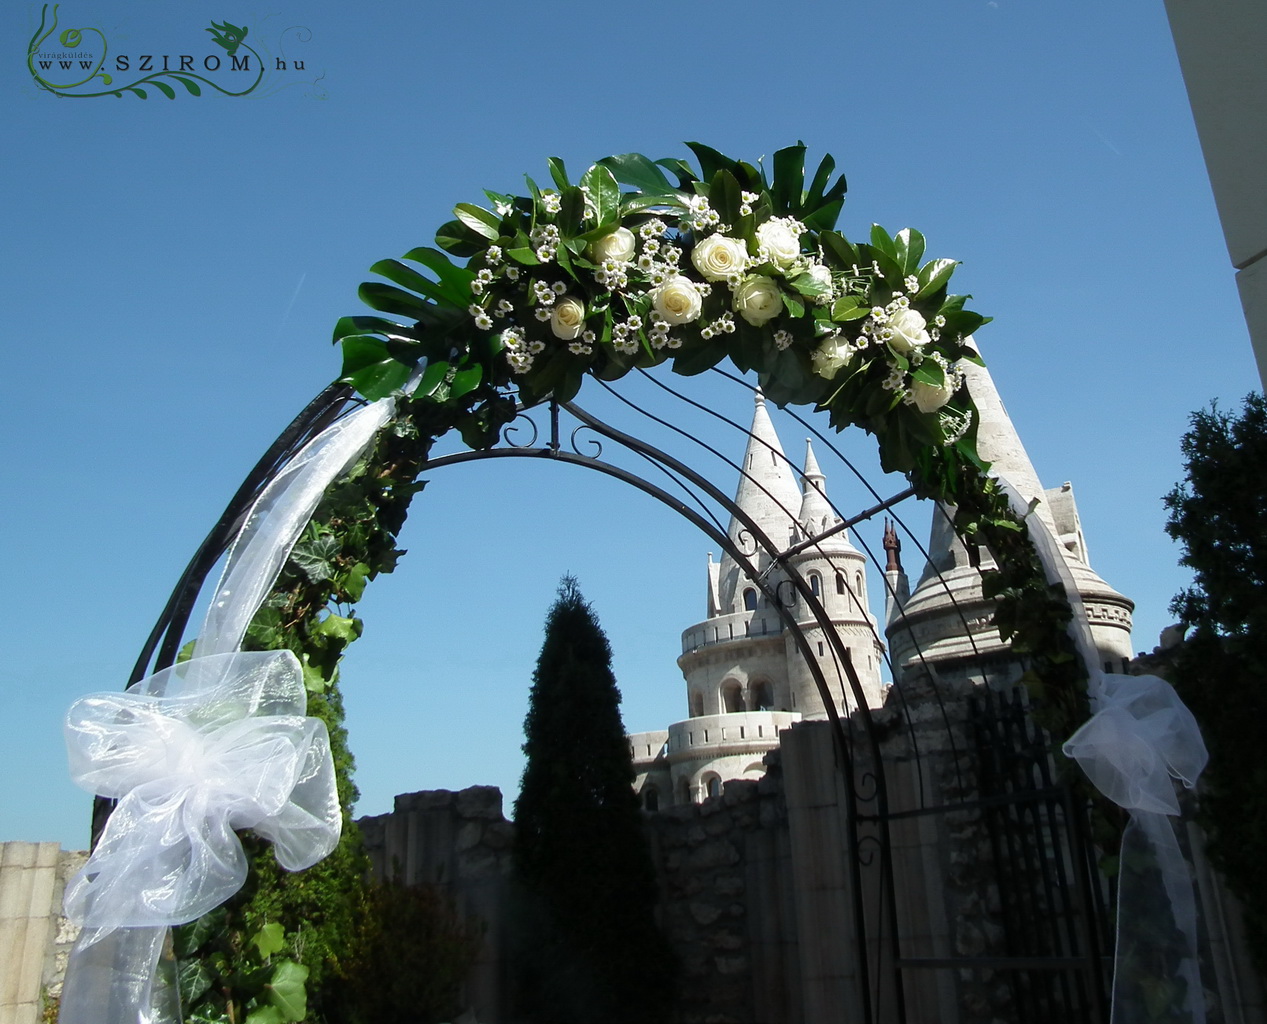 Virágküldés Budapest - boldogság kapu rózsával és santinivel, Hilton (fehér, rózsa, szantini), esküvő